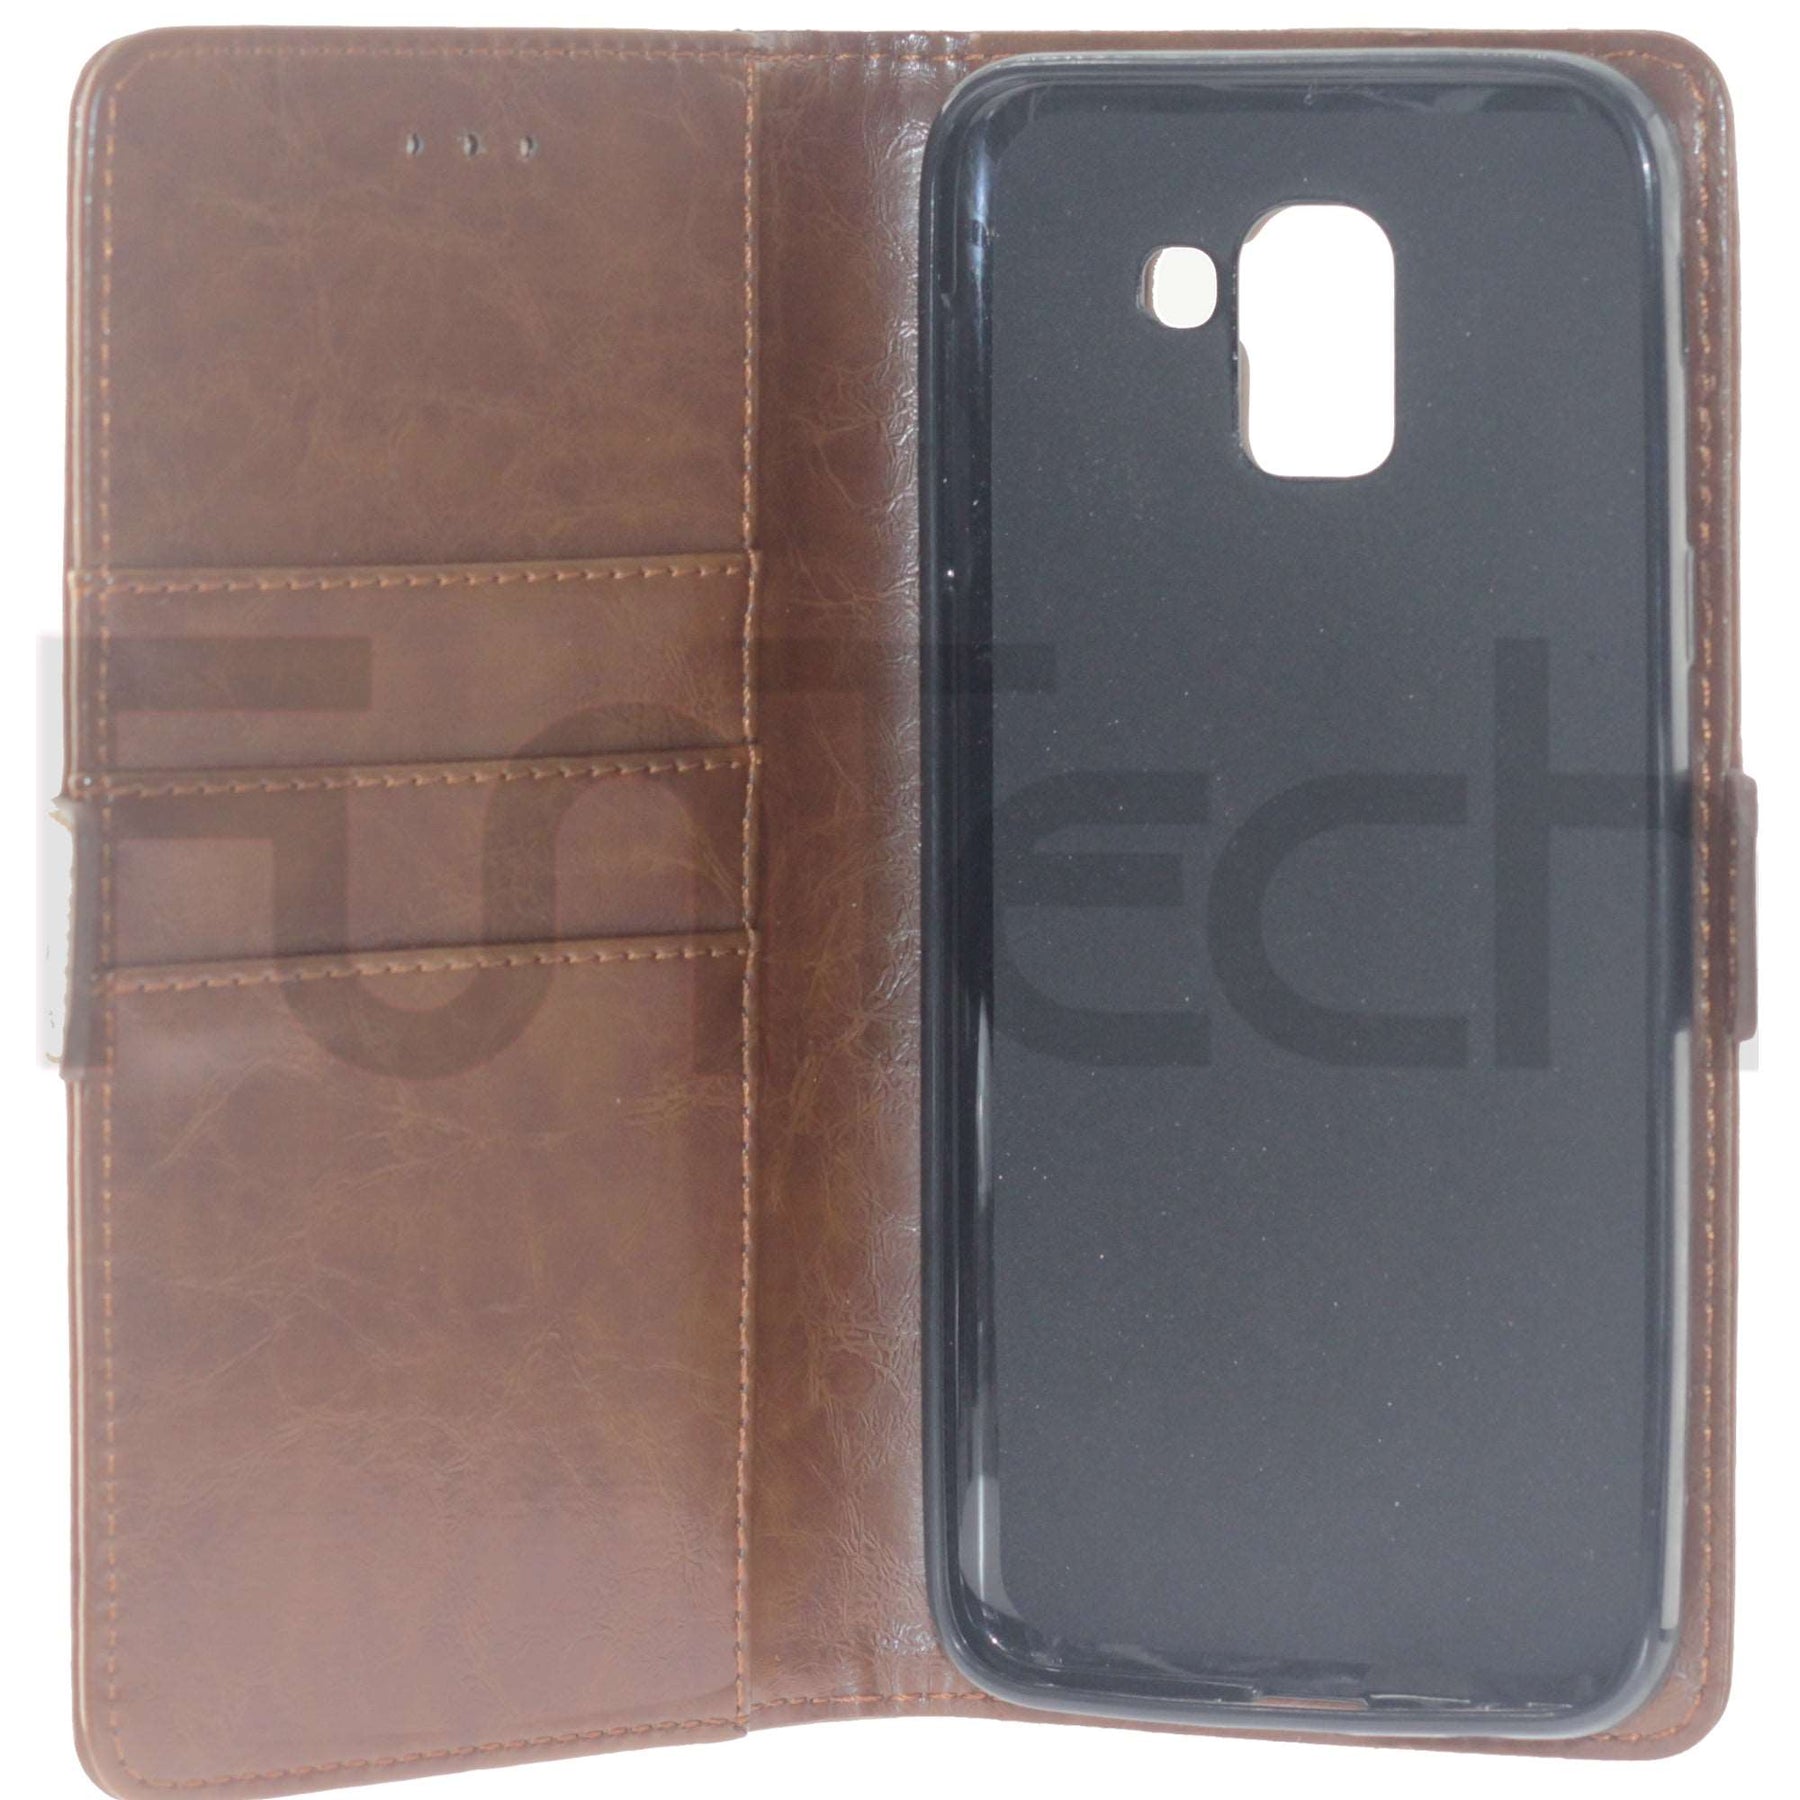 Samsung J8 2018, Leather Wallet Case, Color Brown.